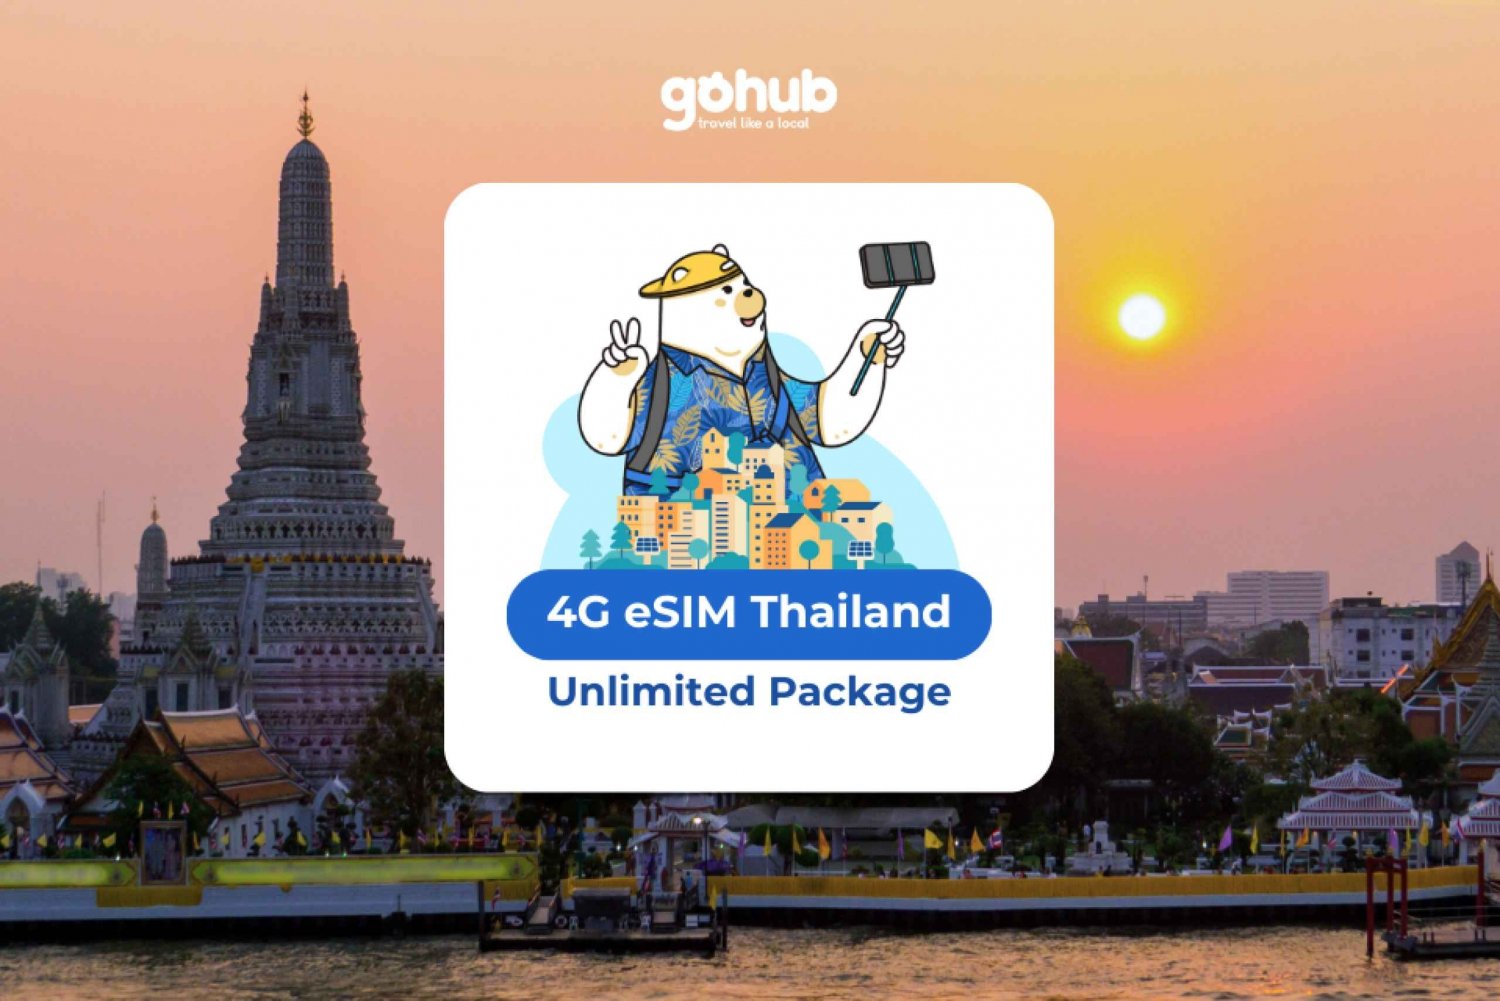 Tailandia eSIM con datos ilimitados durante 10 días : Venta Flash